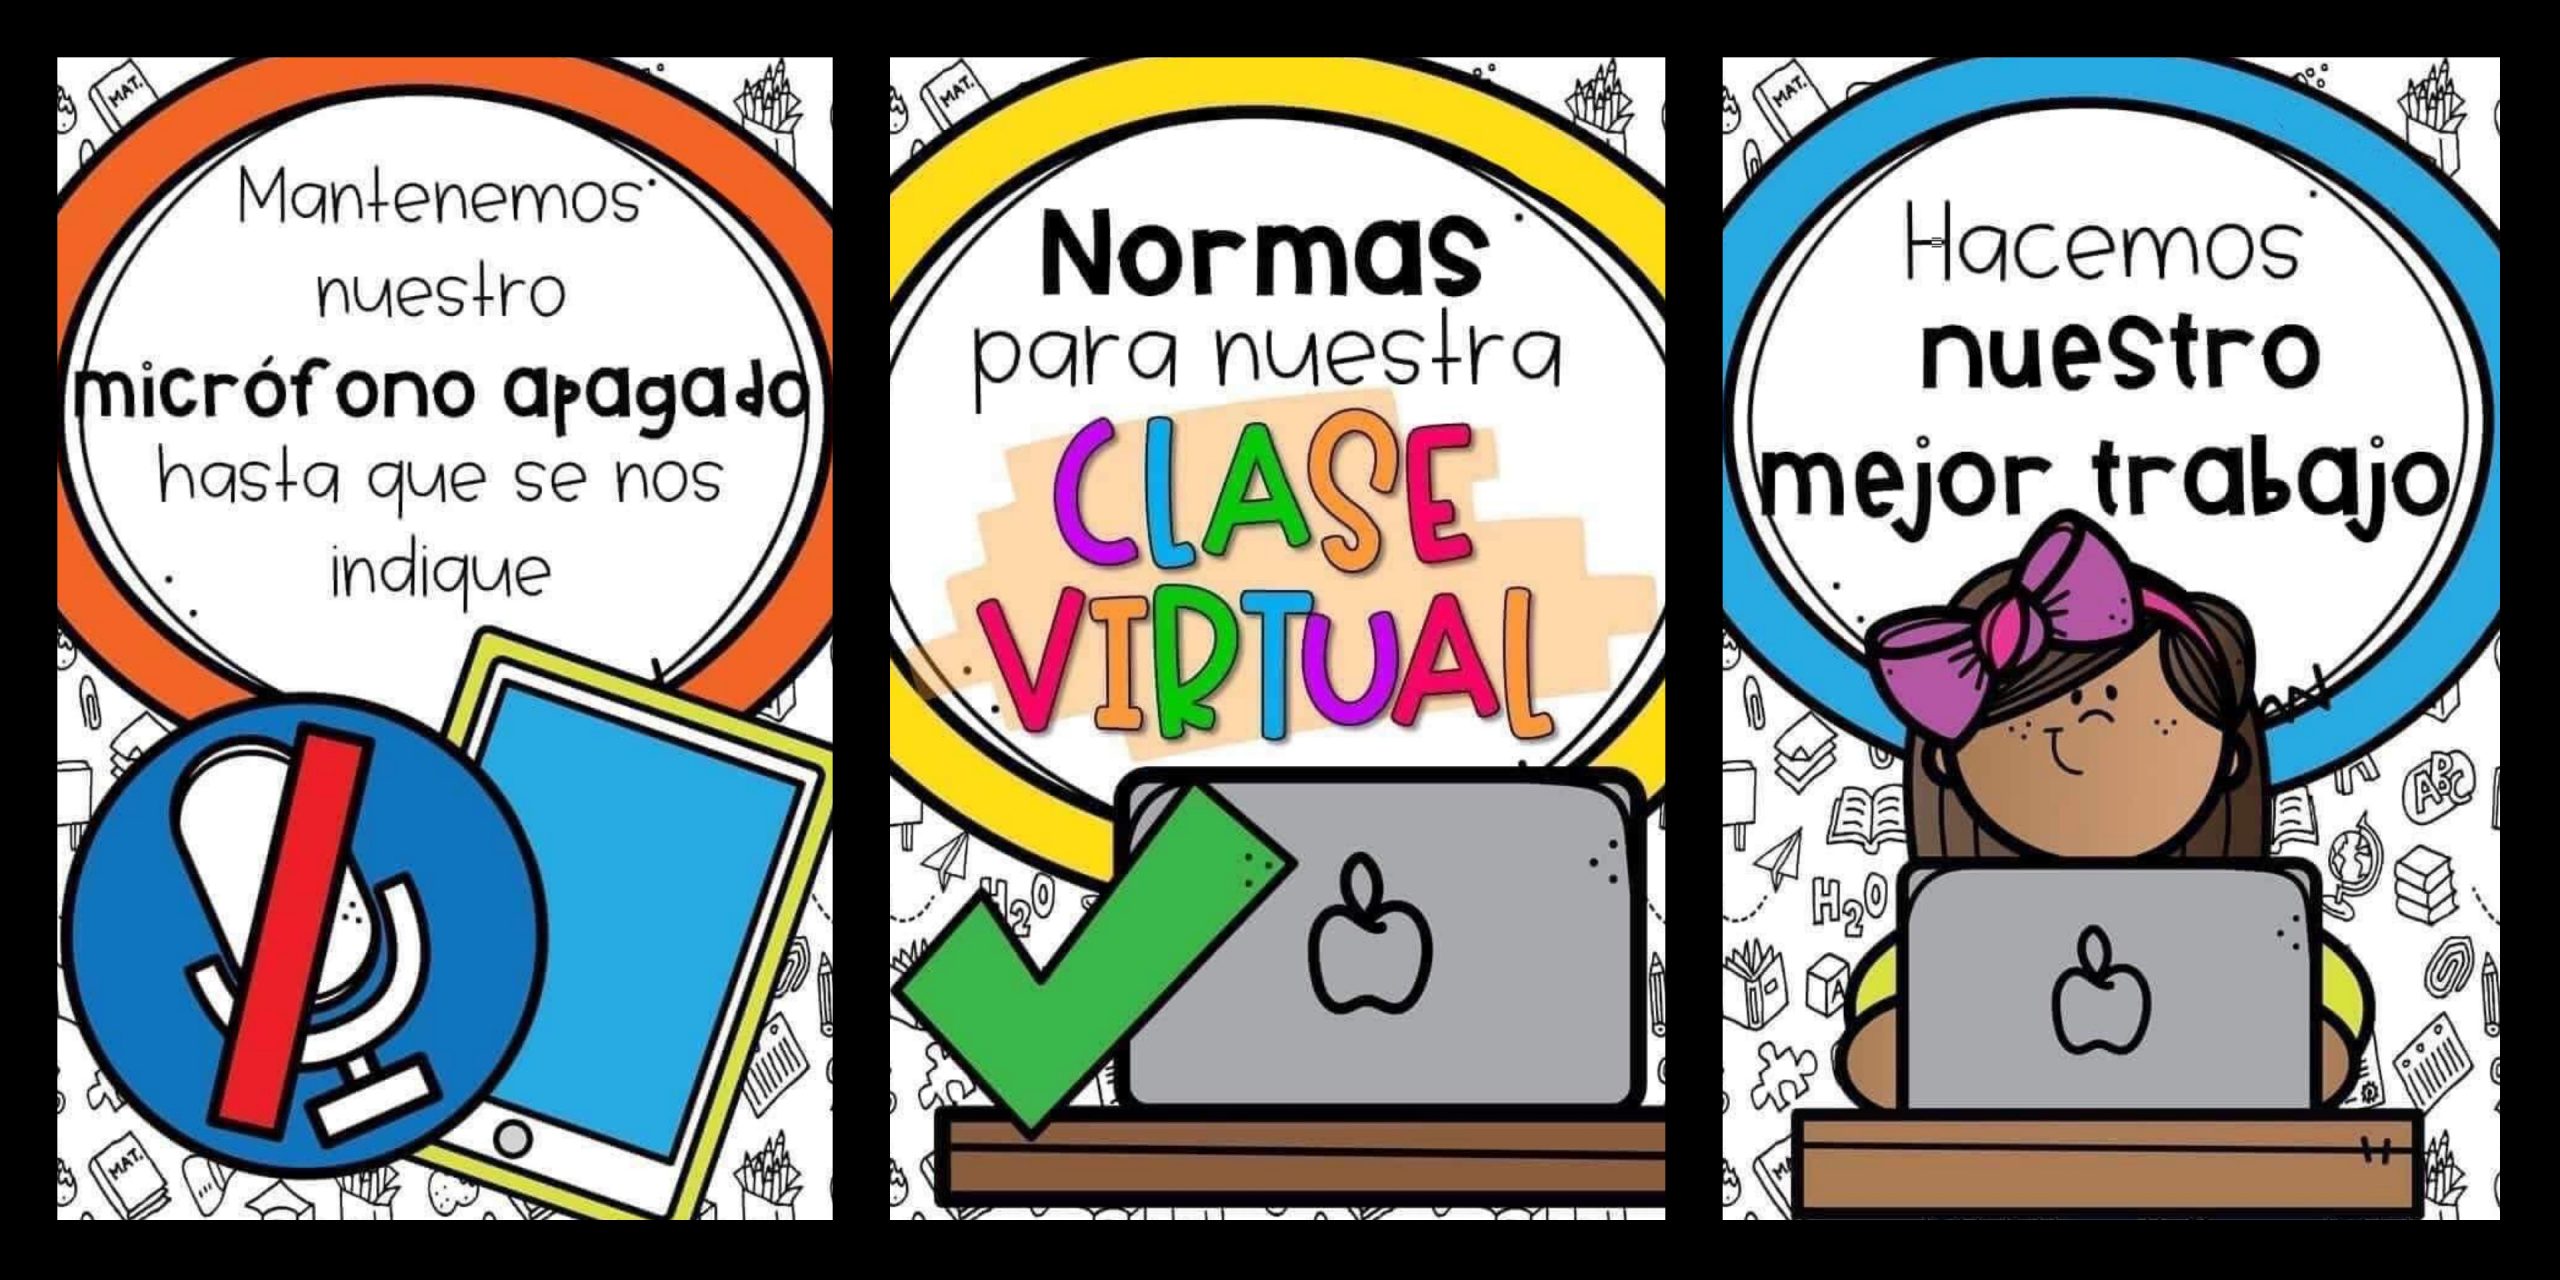 NORMAS PARA NUESTRA CLASE VIRTUAL - Imagenes Educativas